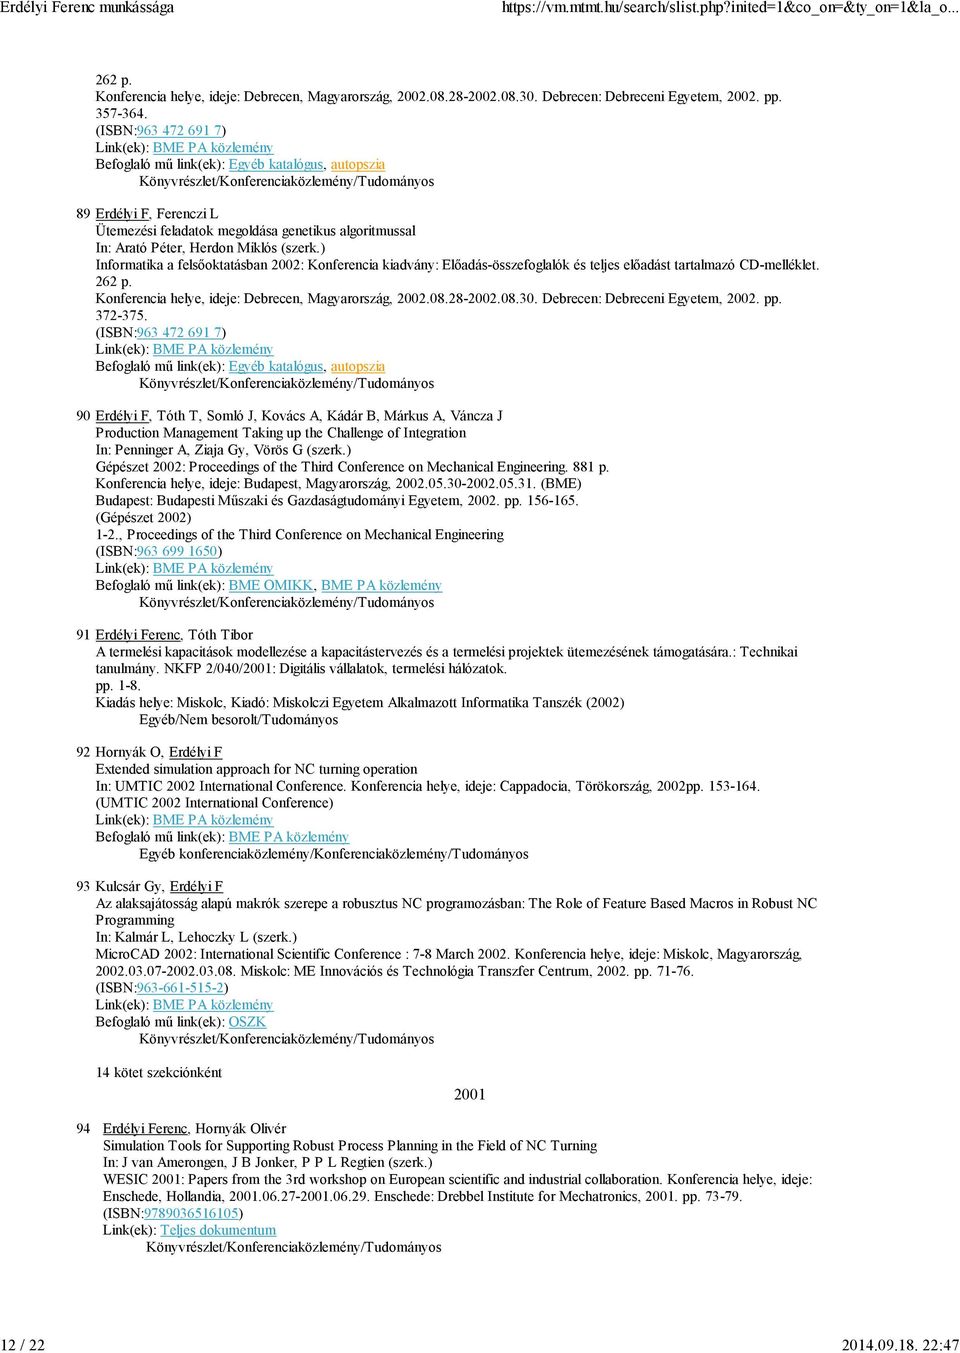 ) Informatika a felsőoktatásban 2002: Konferencia kiadvány: Előadás-összefoglalók és teljes előadást tartalmazó CD-melléklet. 262 p. Konferencia helye, ideje: Debrecen, Magyarország, 2002.08.28-2002.